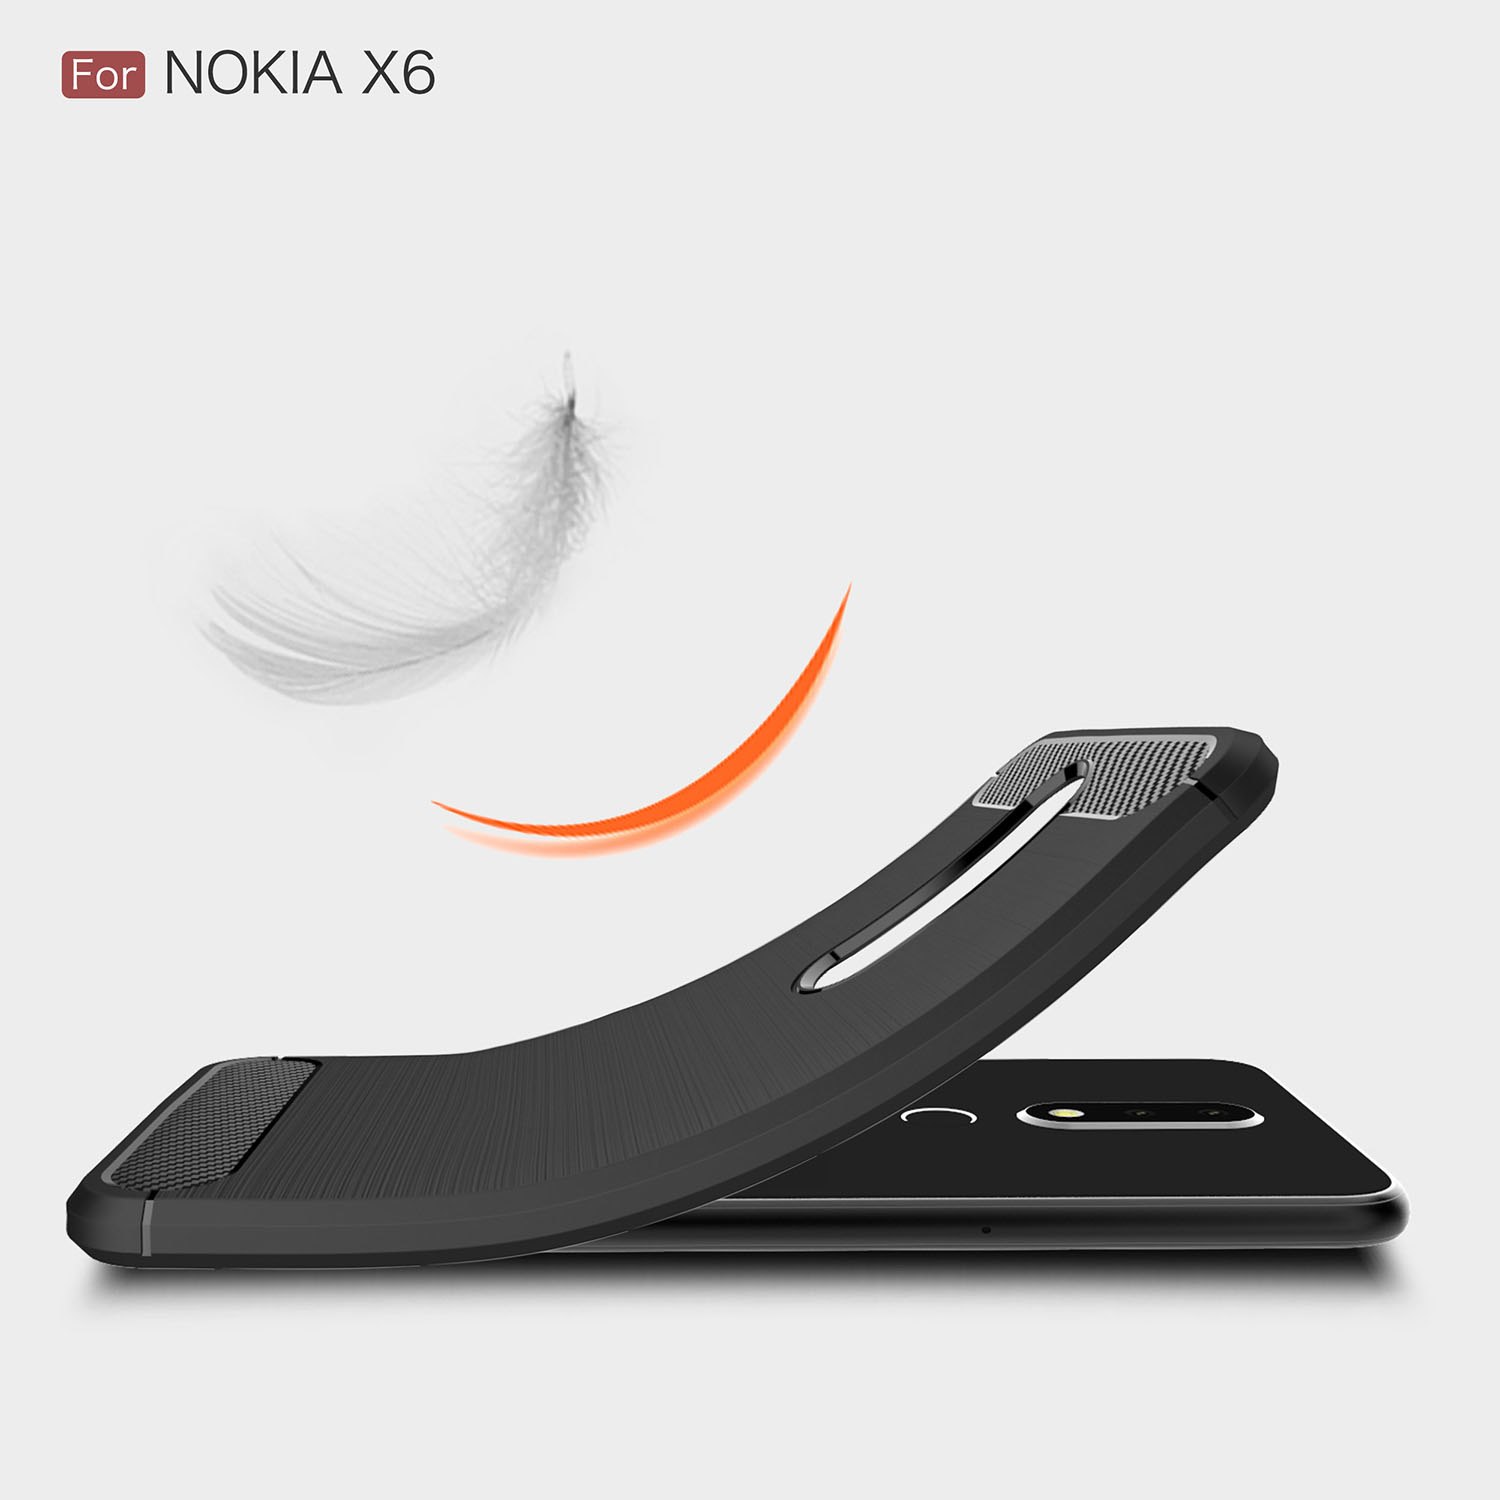 Ốp lưng chống sốc Likgus cho Nokia 6.1 Plus / Nokia X6 (chuẩn quân đội, chống va đập, chống vân tay) - Hàng chính hãng